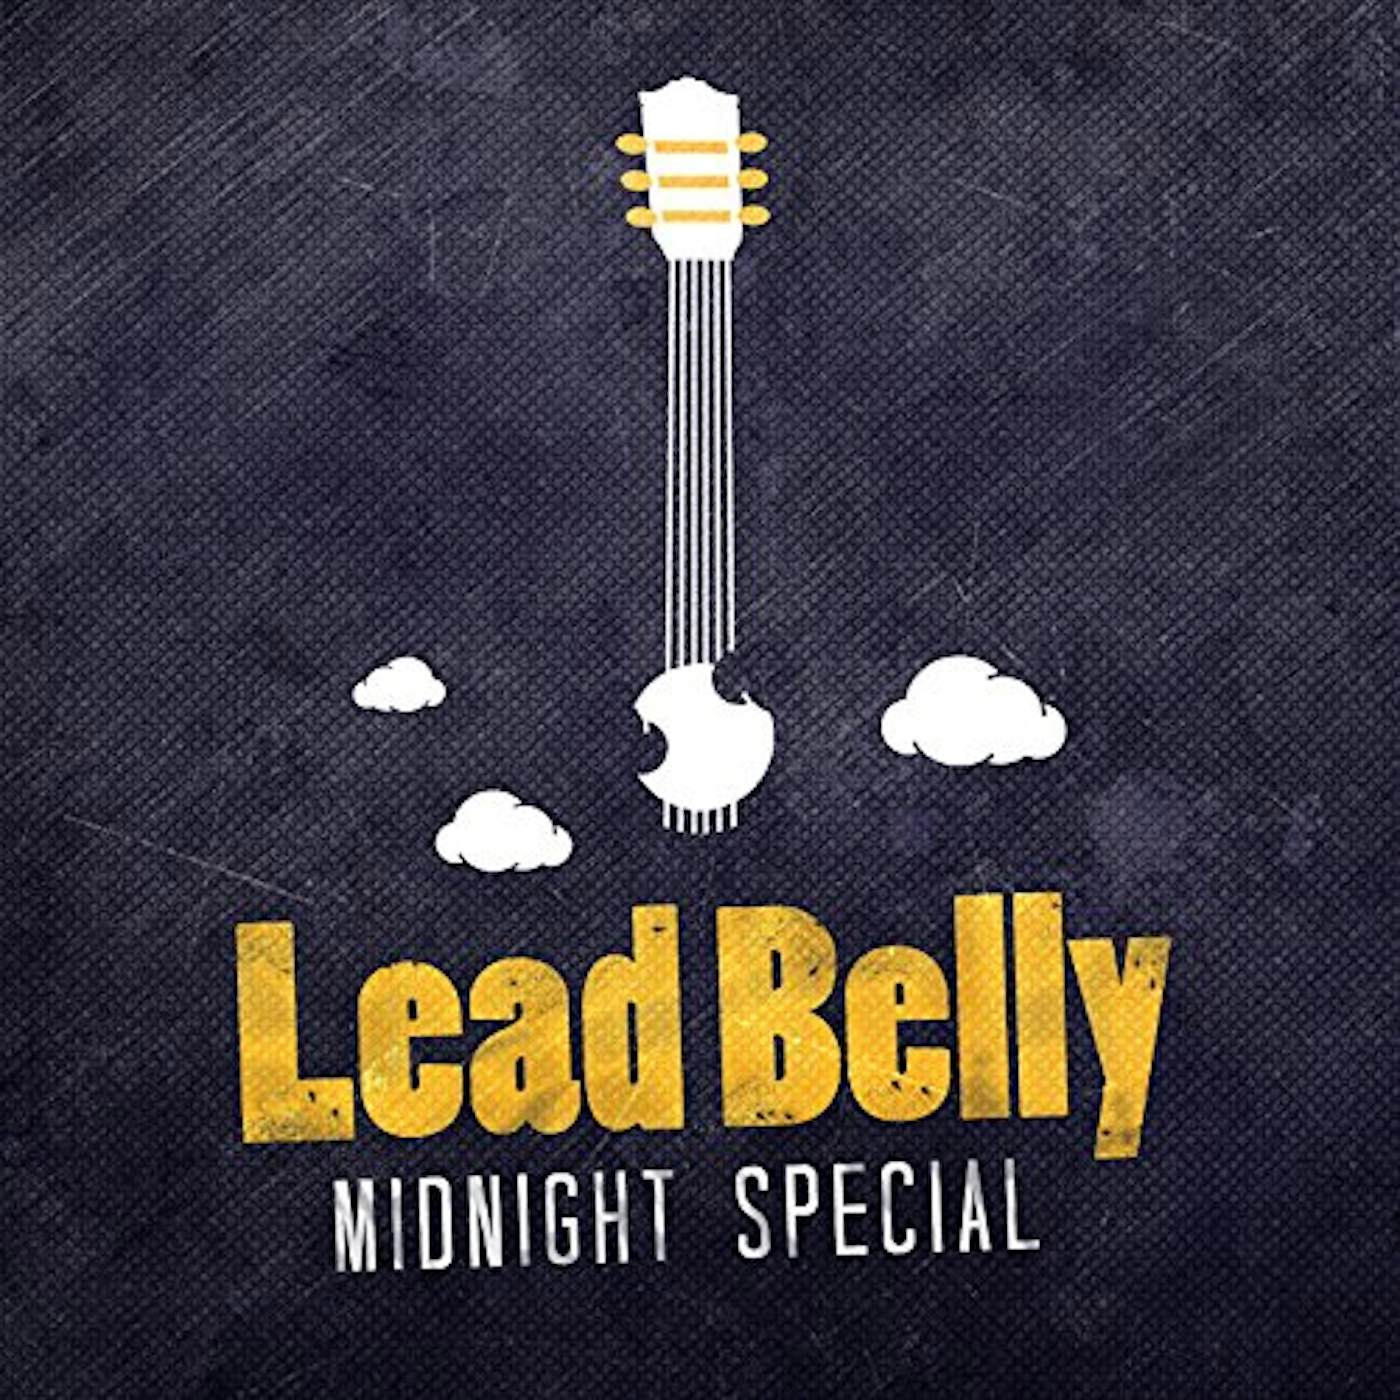 Leadbelly MIDNIGHT SPECIAL CD